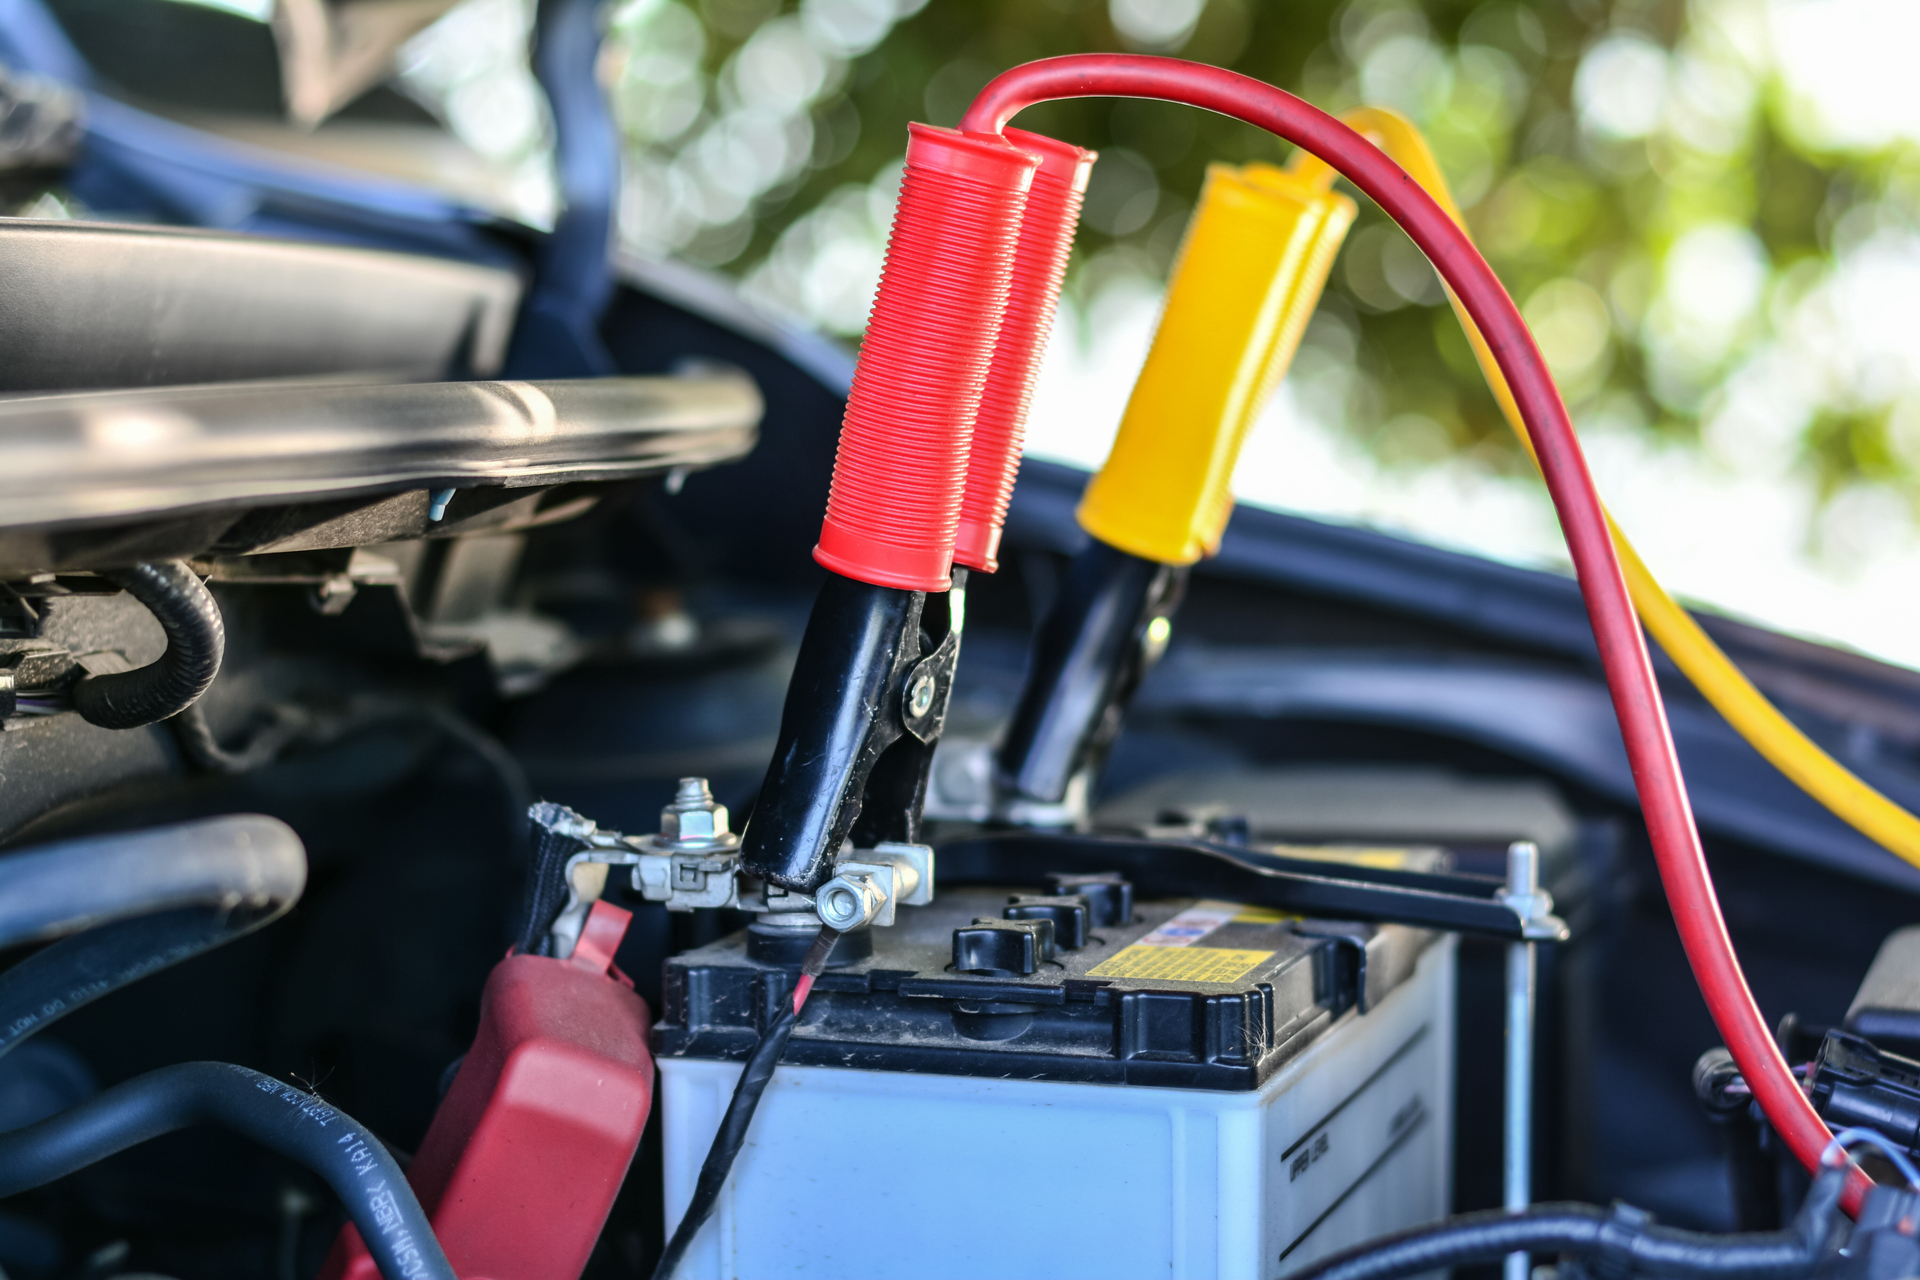 Autobatterie laden mit Ladegerät Anleitung - Autobatterie aufladen